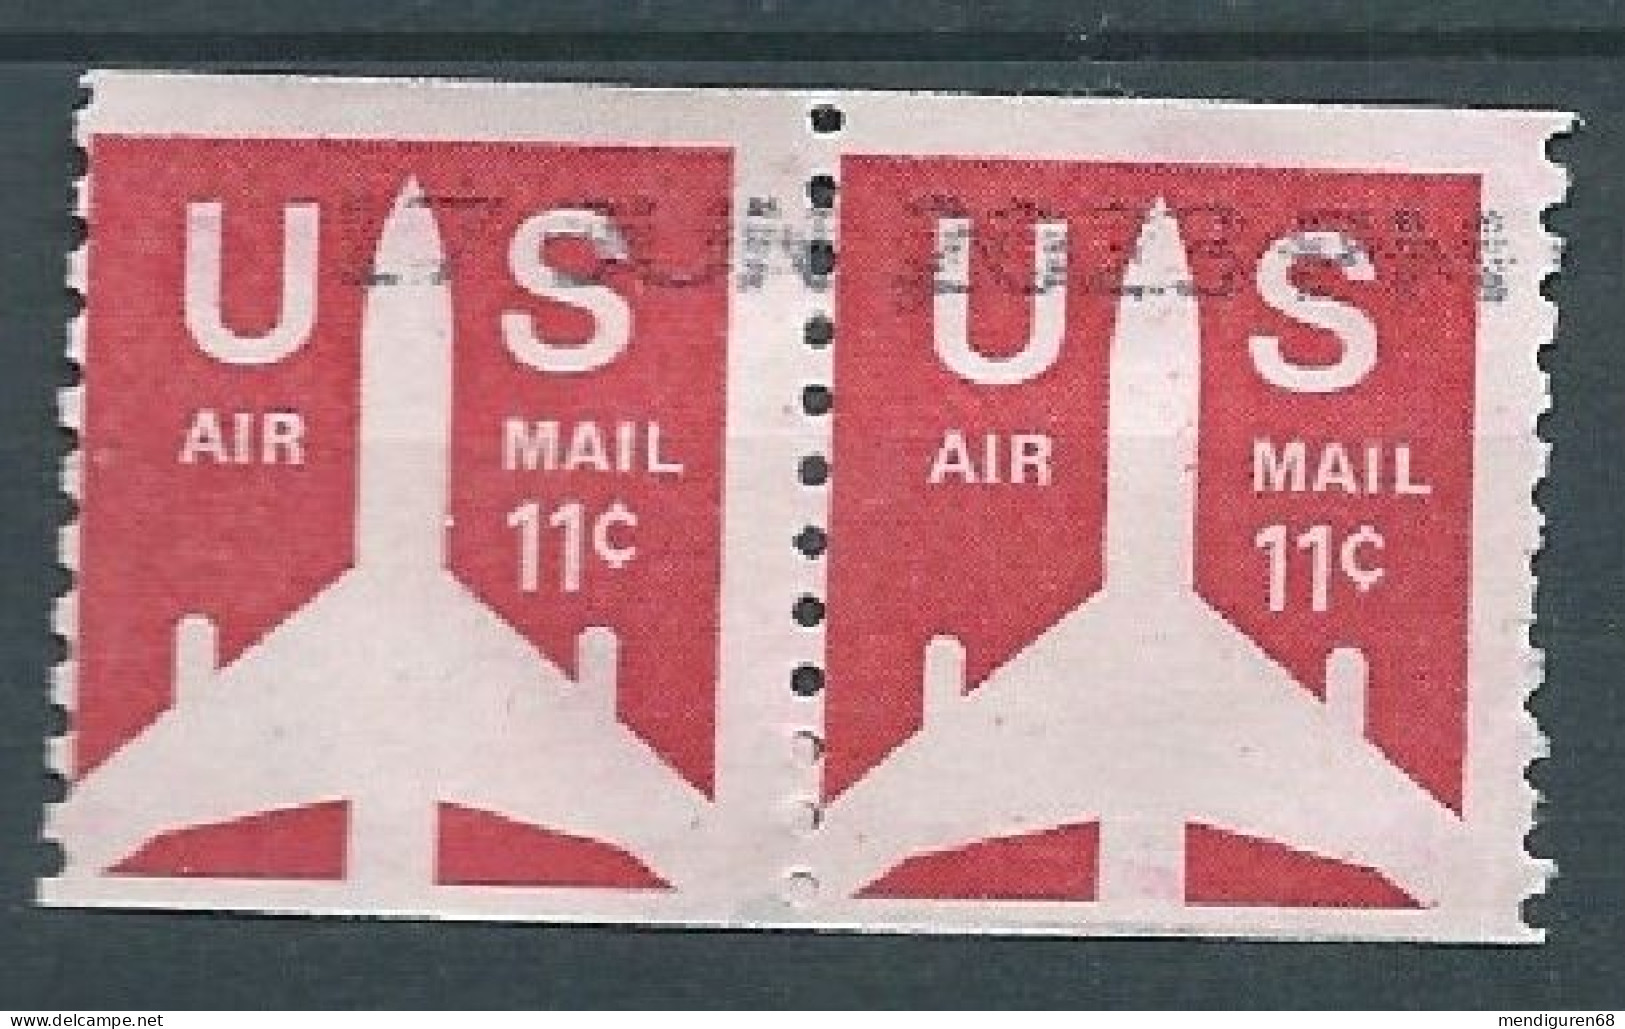 VERINIGTE STAATEN ETATS UNIS USA 1972 AIRMAIL RED  JET COIL PAIR 11c USED SC C82 MI 1029 D SG PA74 A YV A1425 - 3a. 1961-… Used